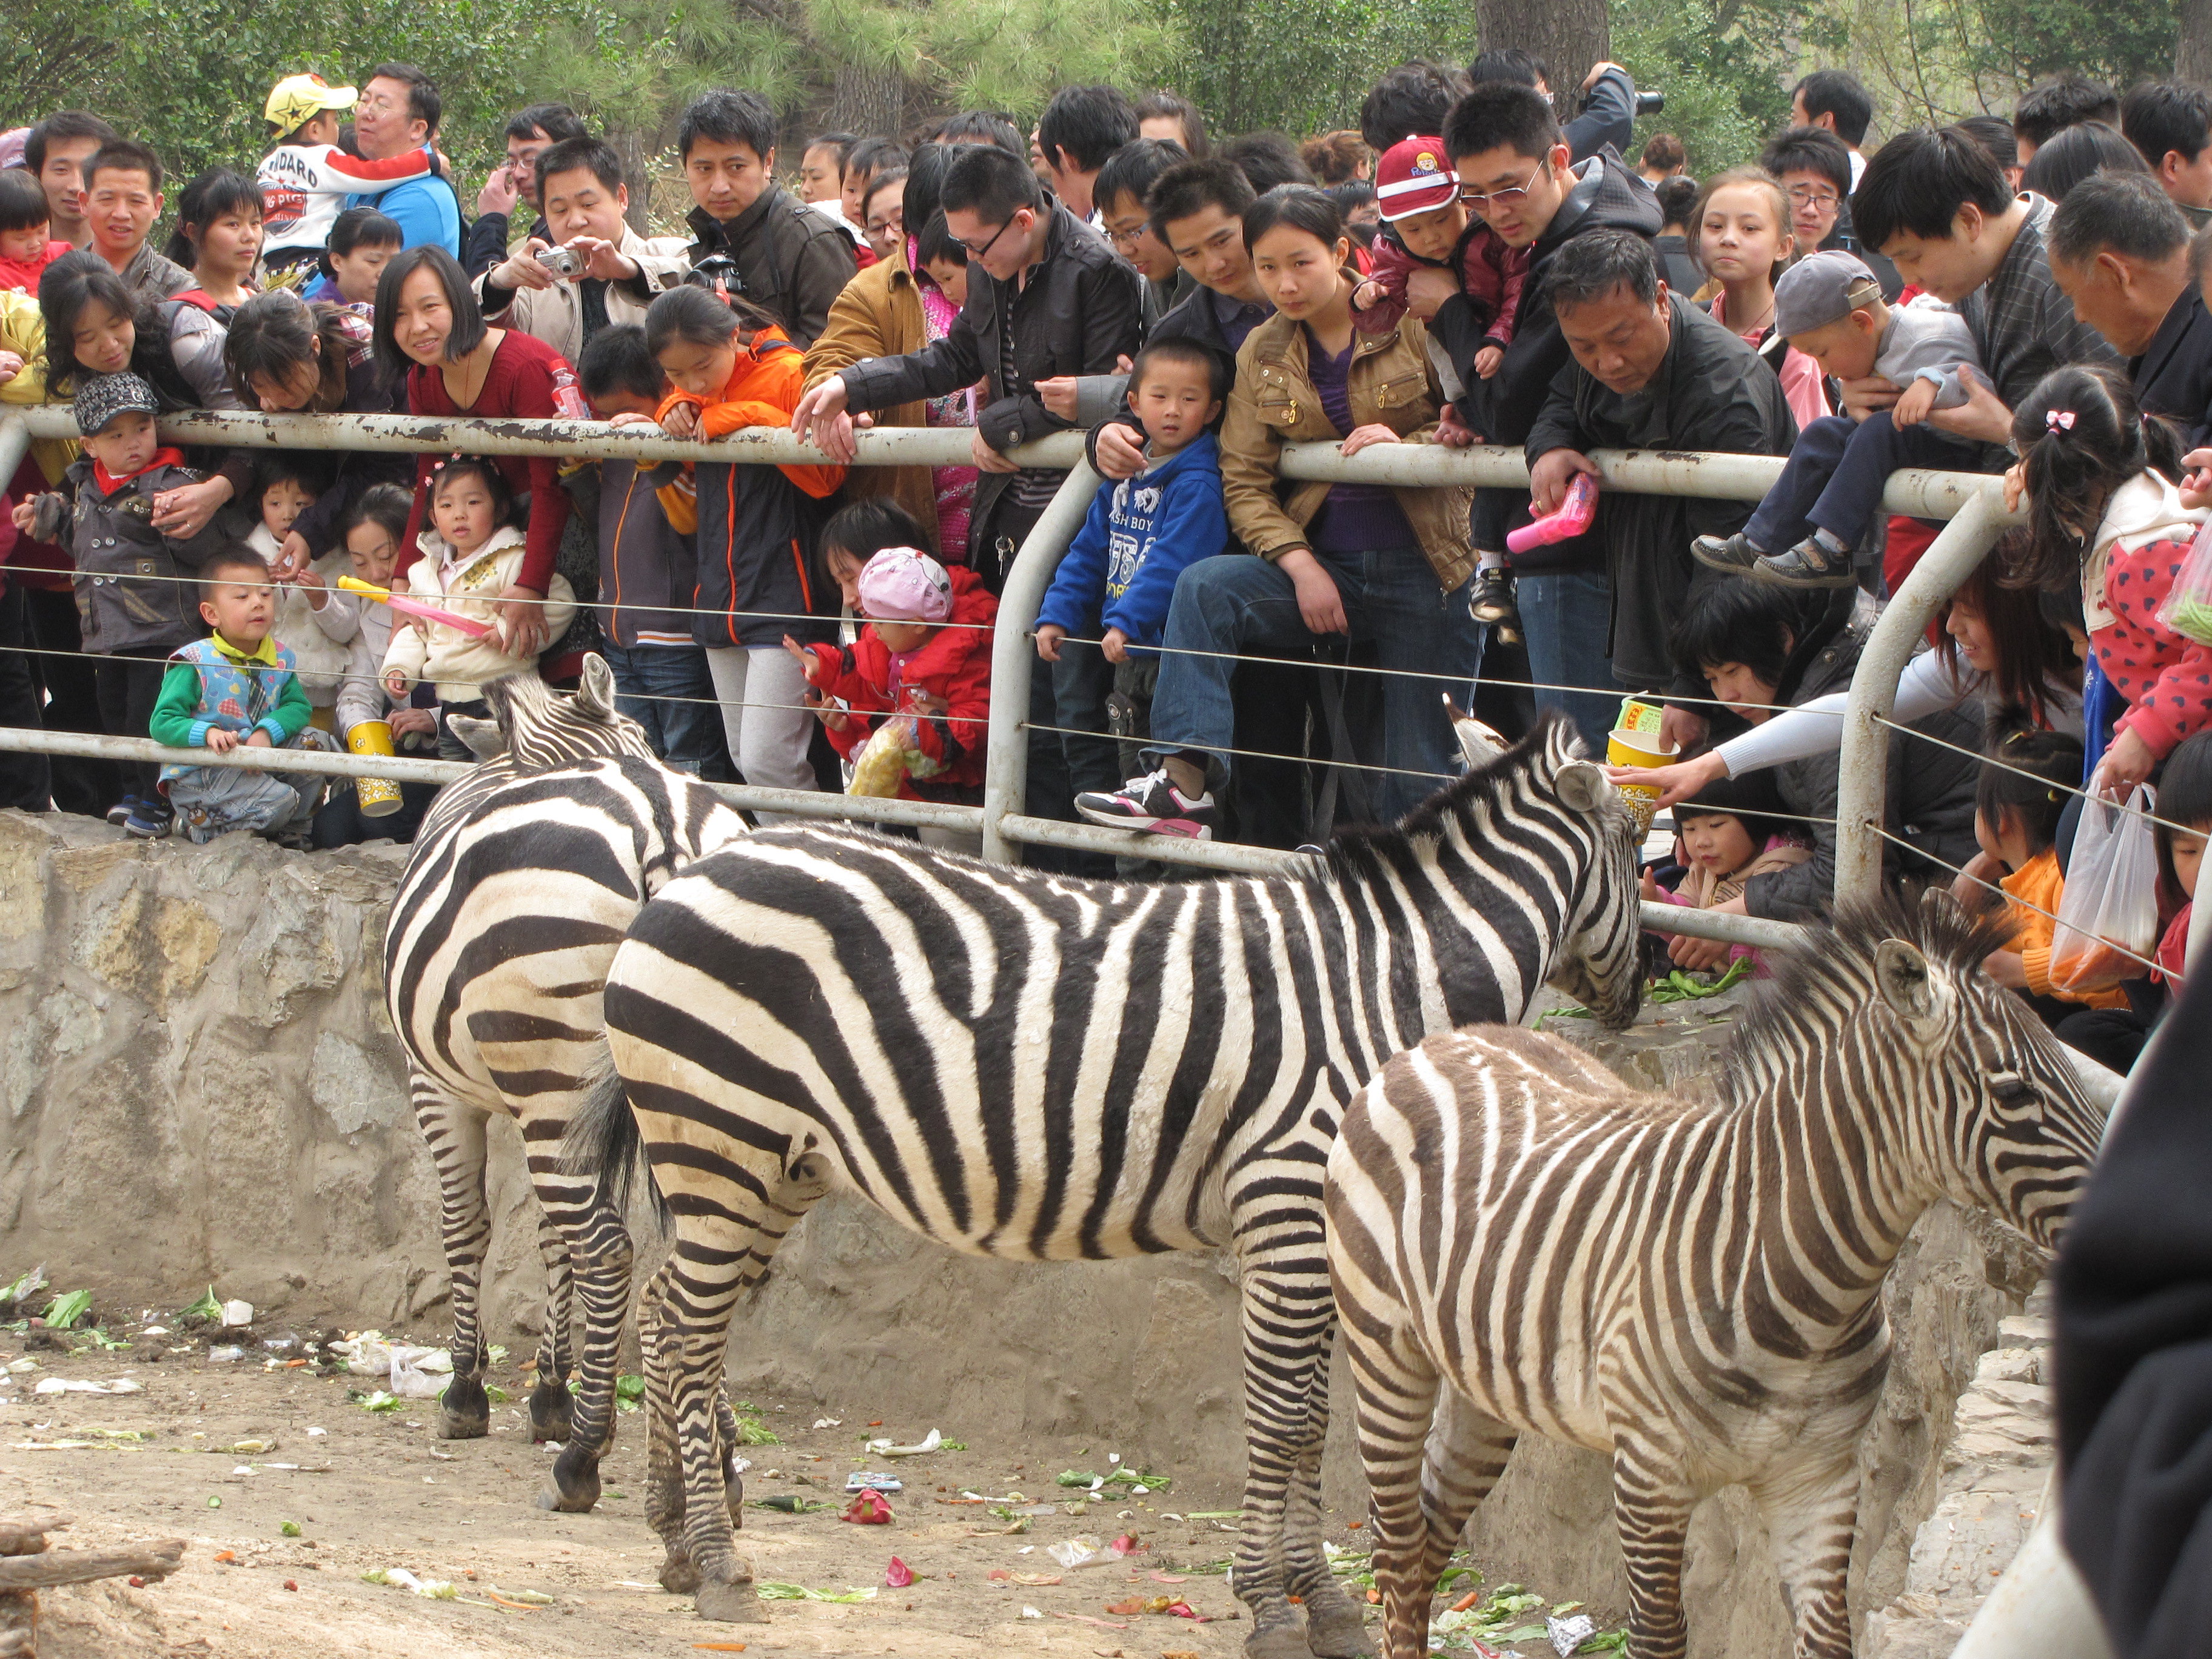 上海野生动物园的门票除了包括车入和步入,还包括什么?如:动物表演等?